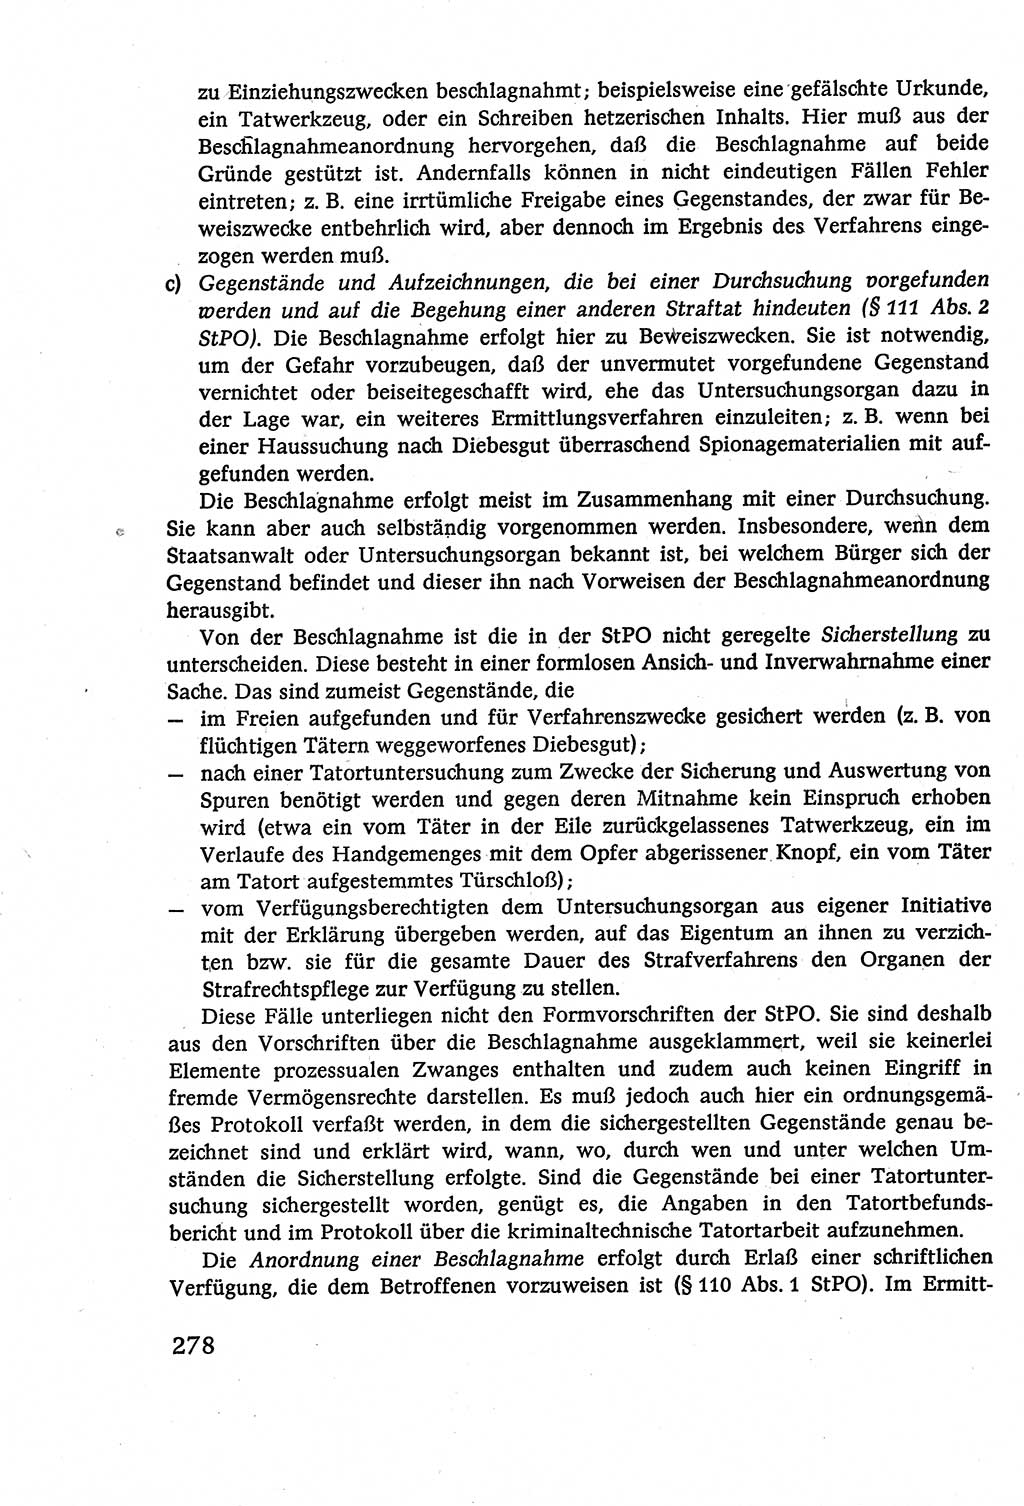 Strafverfahrensrecht [Deutsche Demokratische Republik (DDR)], Lehrbuch 1977, Seite 278 (Strafverf.-R. DDR Lb. 1977, S. 278)